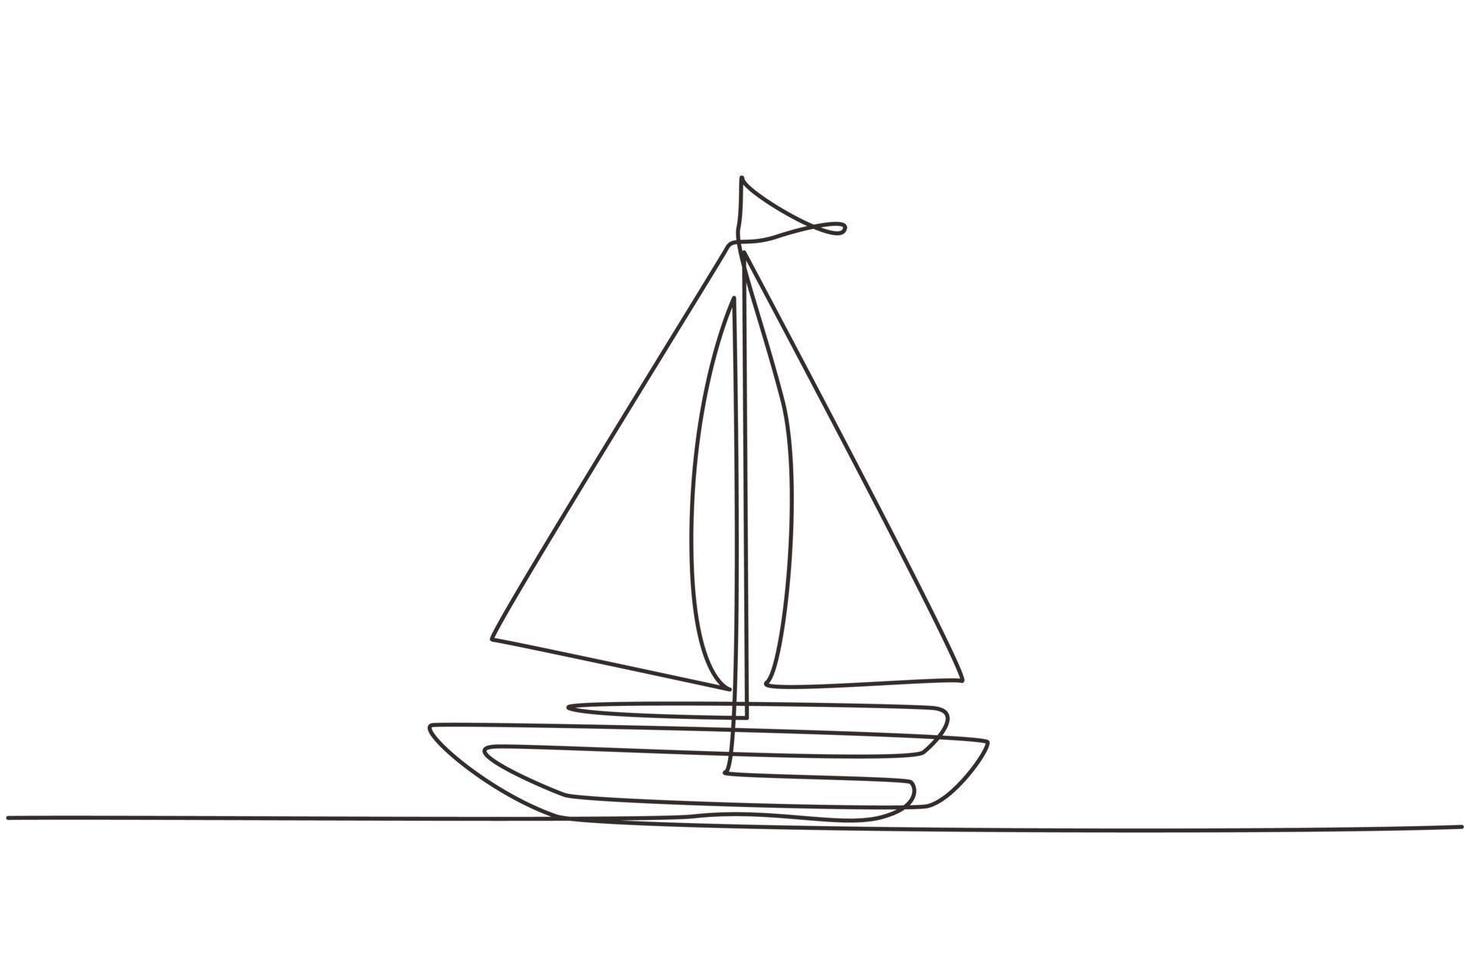 único desenho de uma linha pequeno veleiro, barco, veleiro, estilo simples. ícone ou símbolo de barco de brinquedo, veleiro, veleiro com velas brancas. ilustração em vetor gráfico de desenho de linha contínua